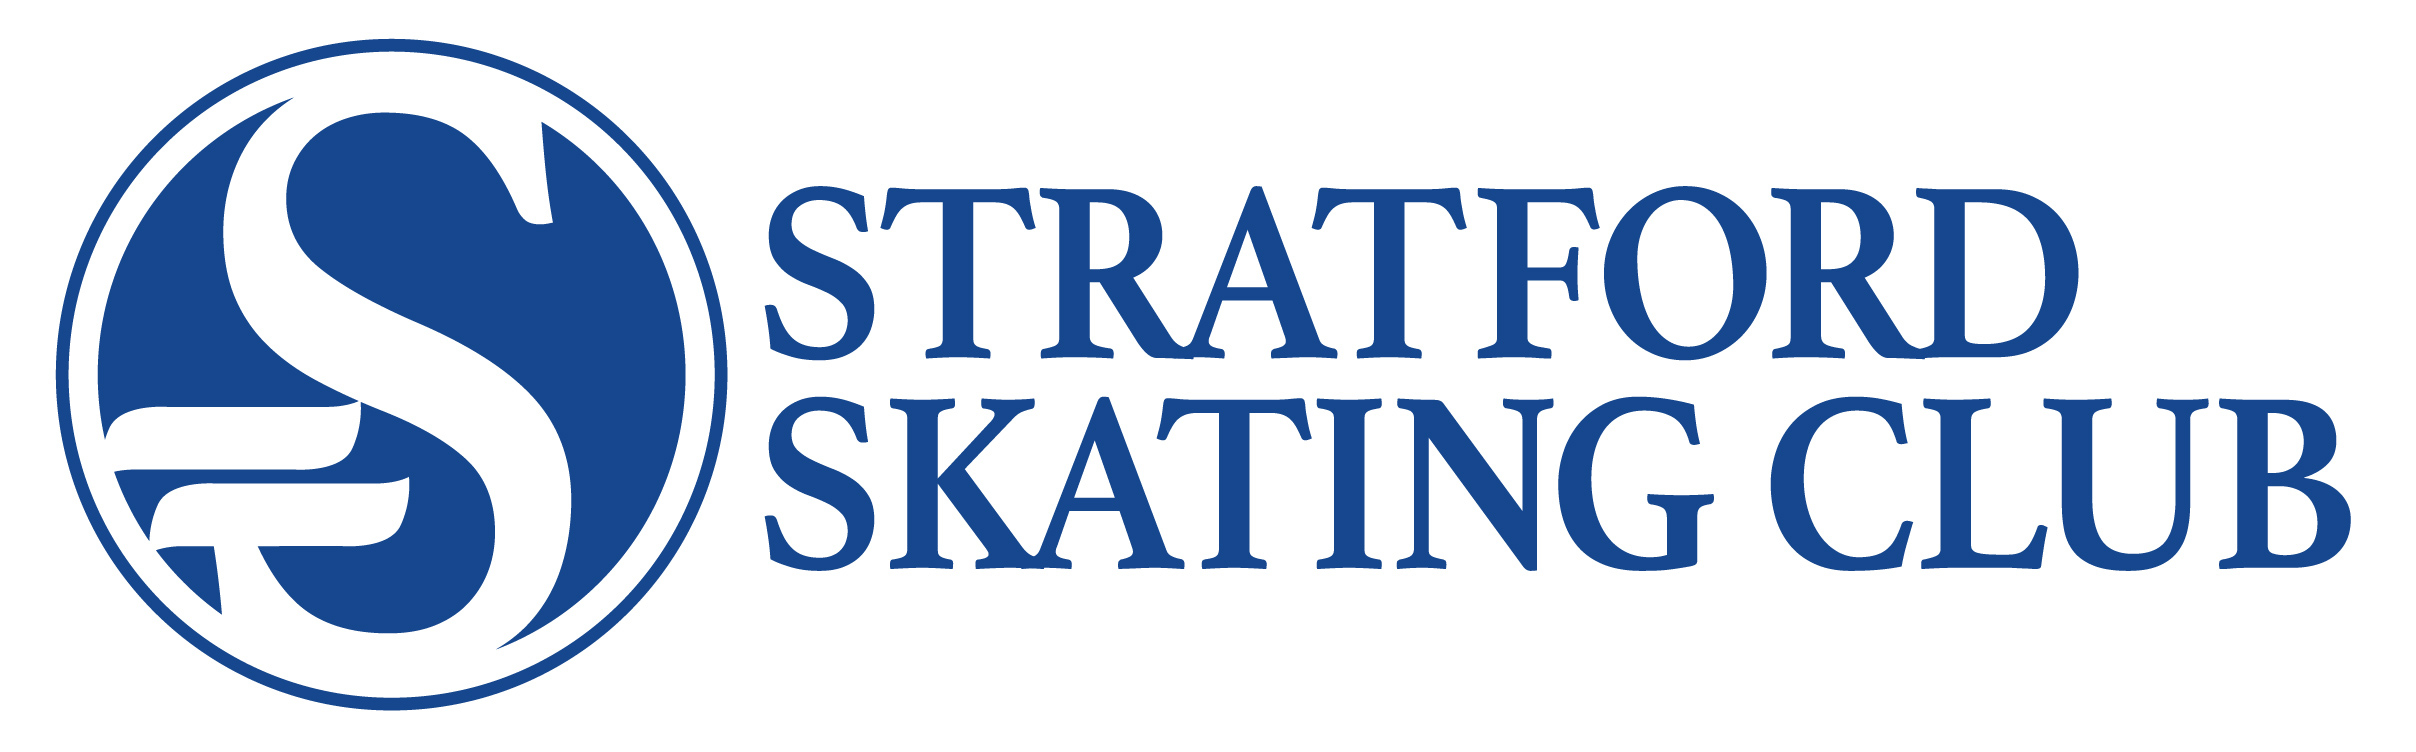 Stratford Skating Club